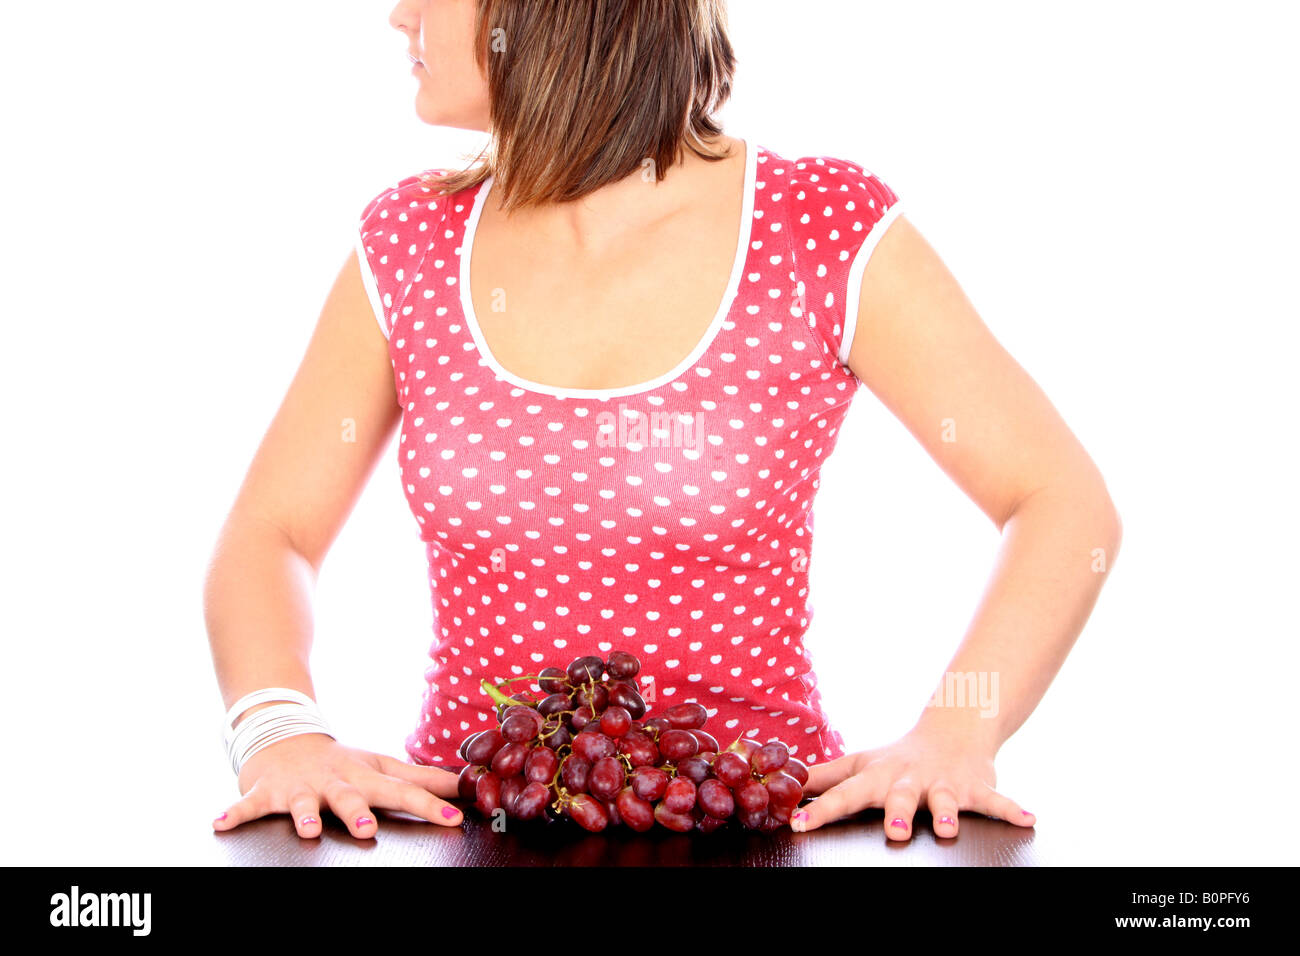 Junge Frau mit roten Trauben Modell veröffentlicht Stockfoto